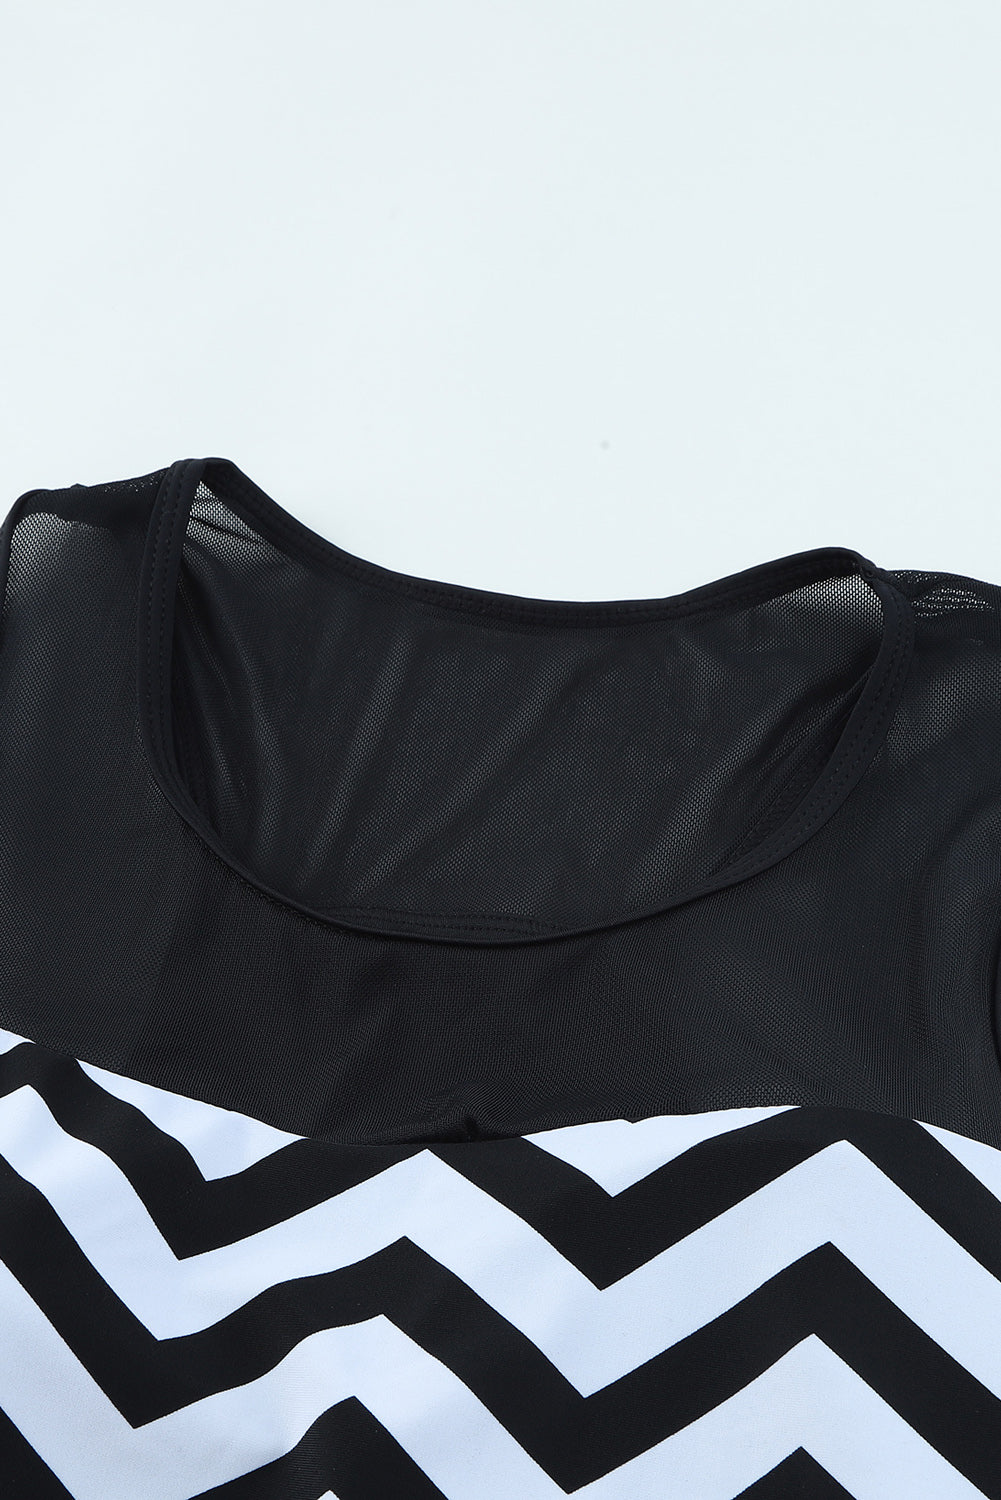 Black White Zigzag Print Mesh Splice 2pcs Tankini Swimsuit